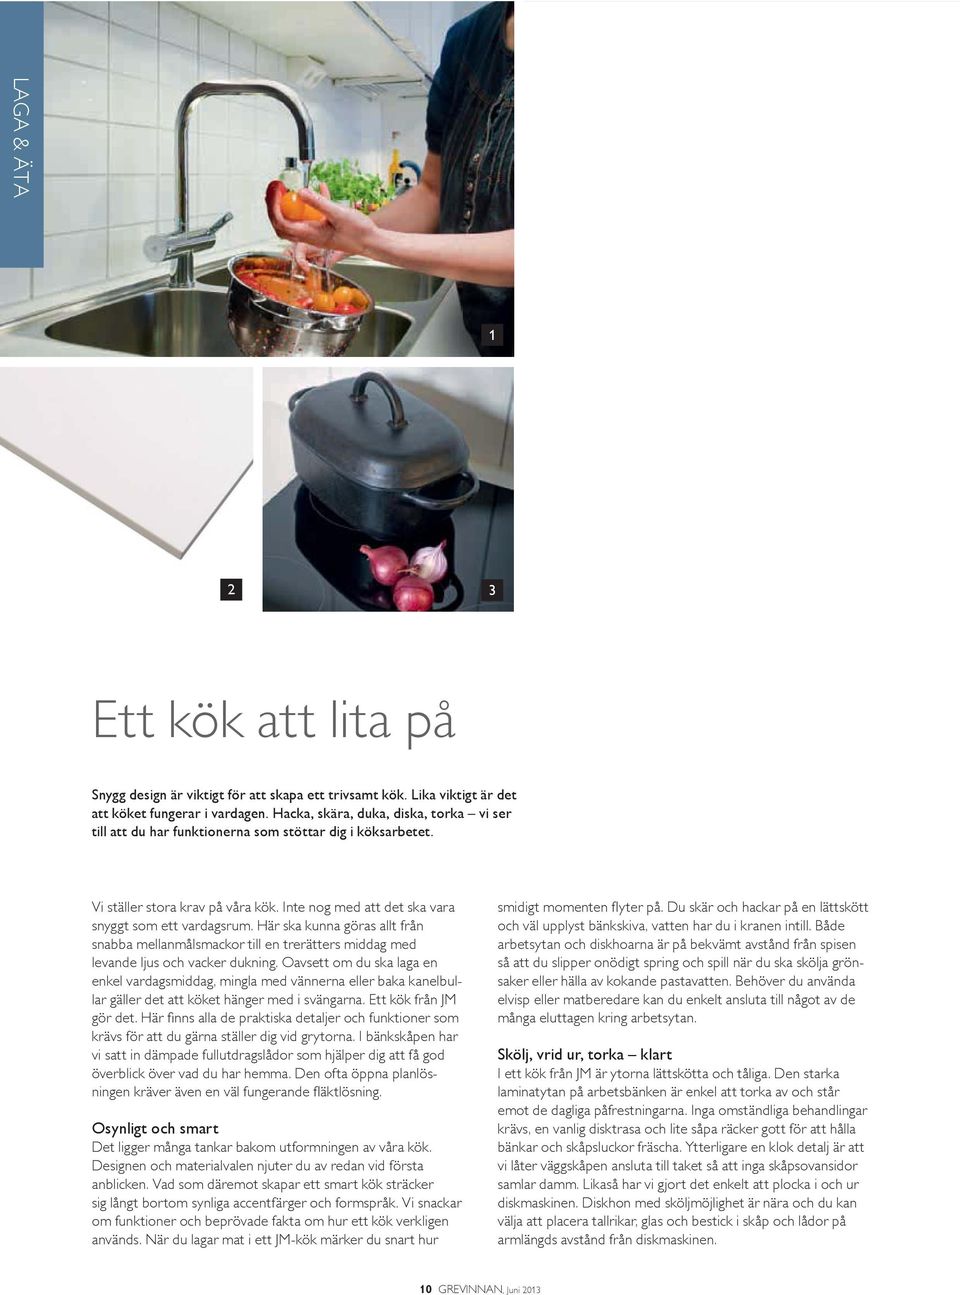 Det svensktillverkade köket från Ballingslöv/Vedum är av klassisk modell med vita släta luckor. Bänkskåpen har dämpade fullutdragslådor för maximal tillgänglighet. 1.